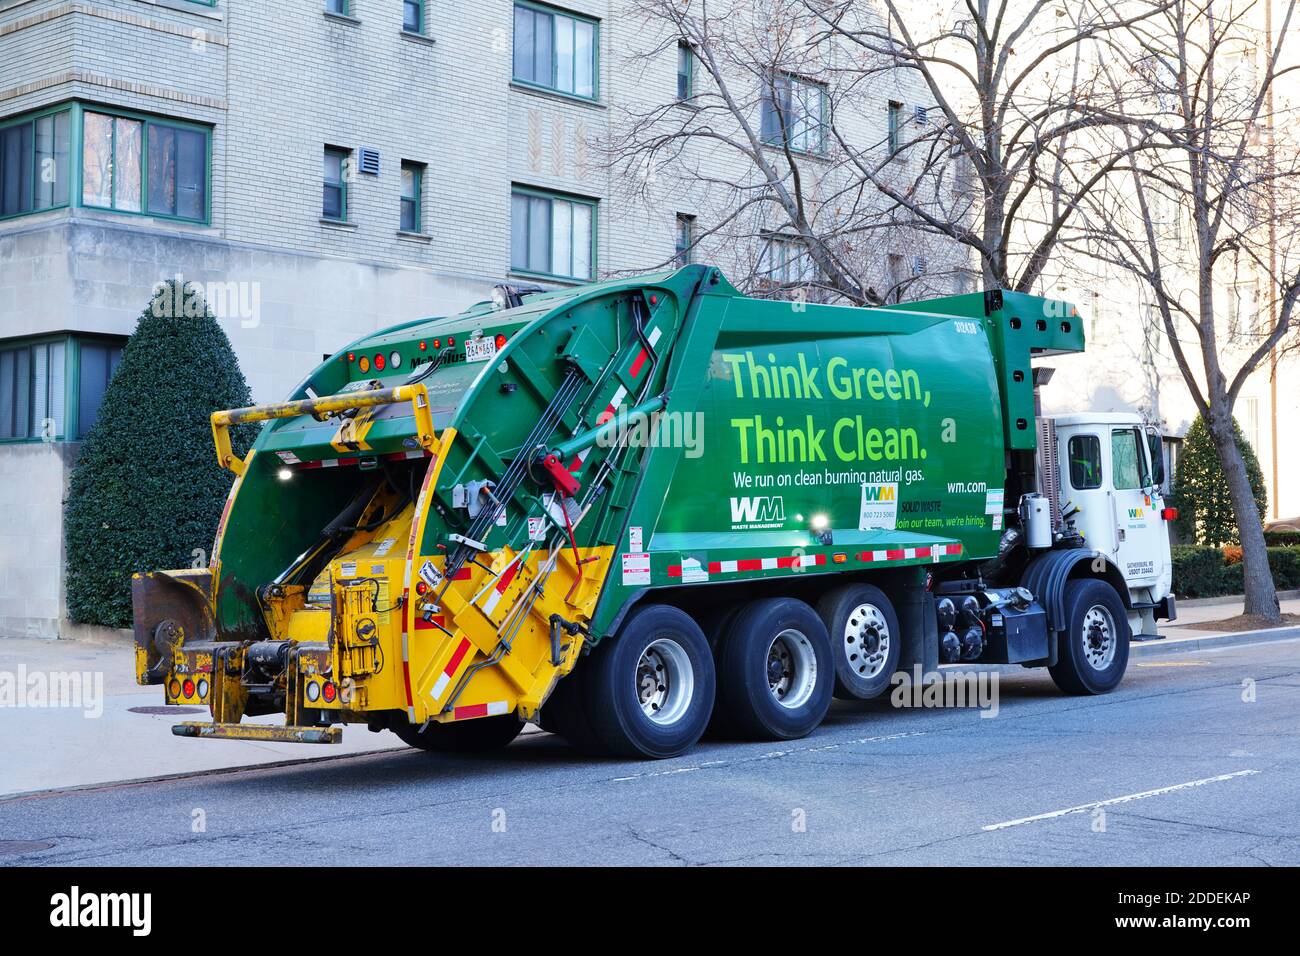 WASHINGTON, DC - 21. FEBRUAR 2020- Blick auf einen Müllwagen für Abfallwirtschaft, der sagt: Think Green, Think Clean auf der Straße in Washington, DC, USA. Stockfoto